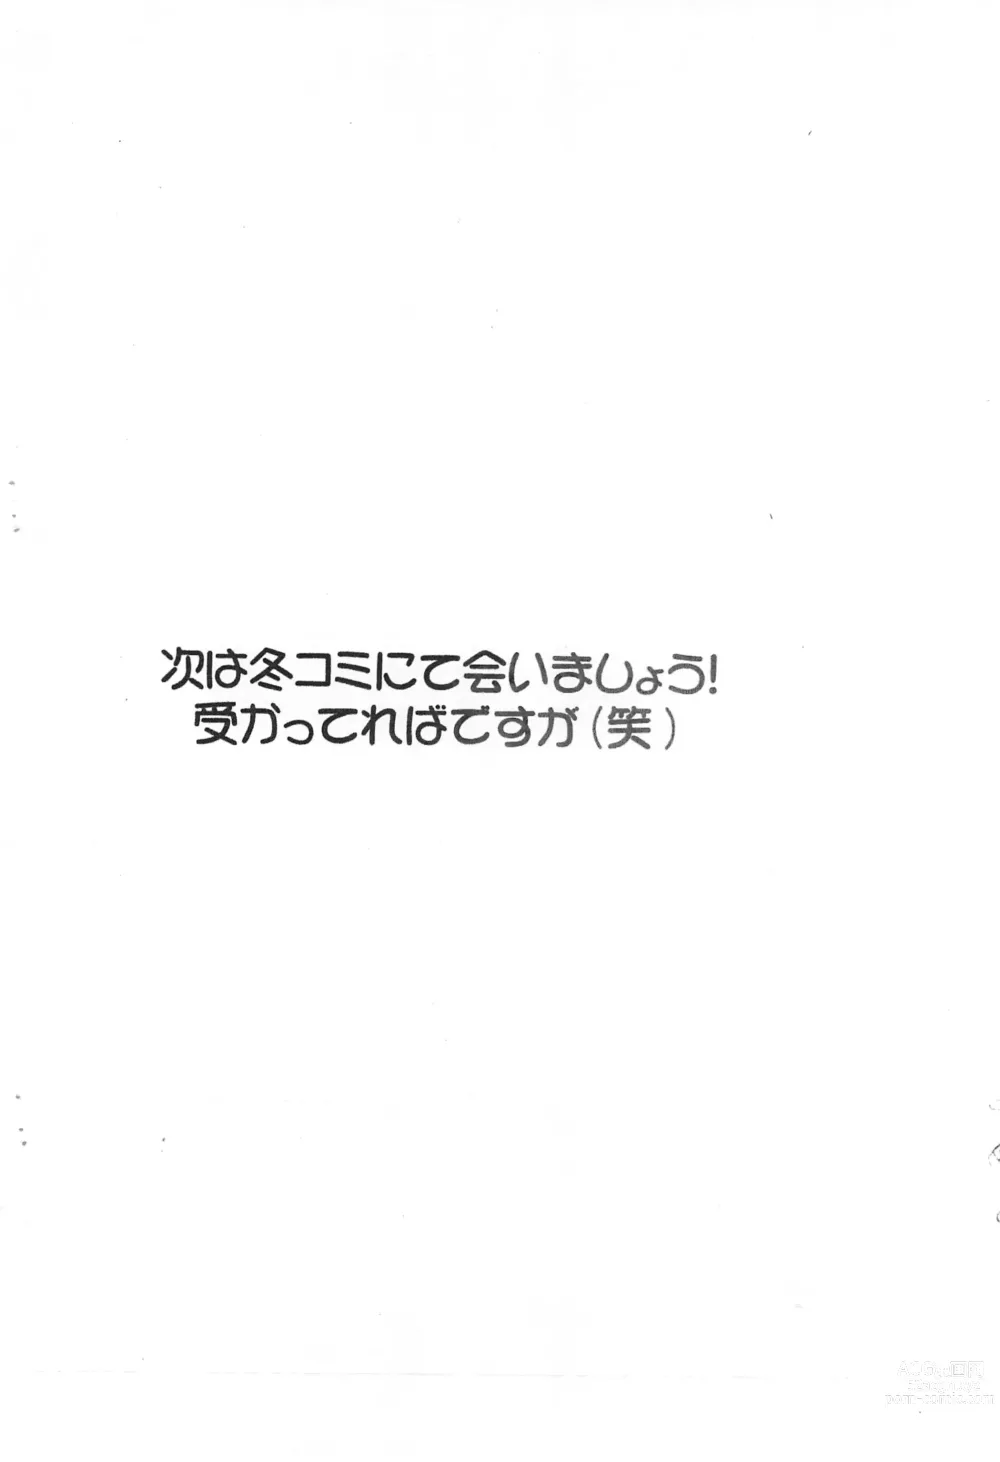 Page 10 of doujinshi Kutabare Love Hina! Dai-2-suri ver